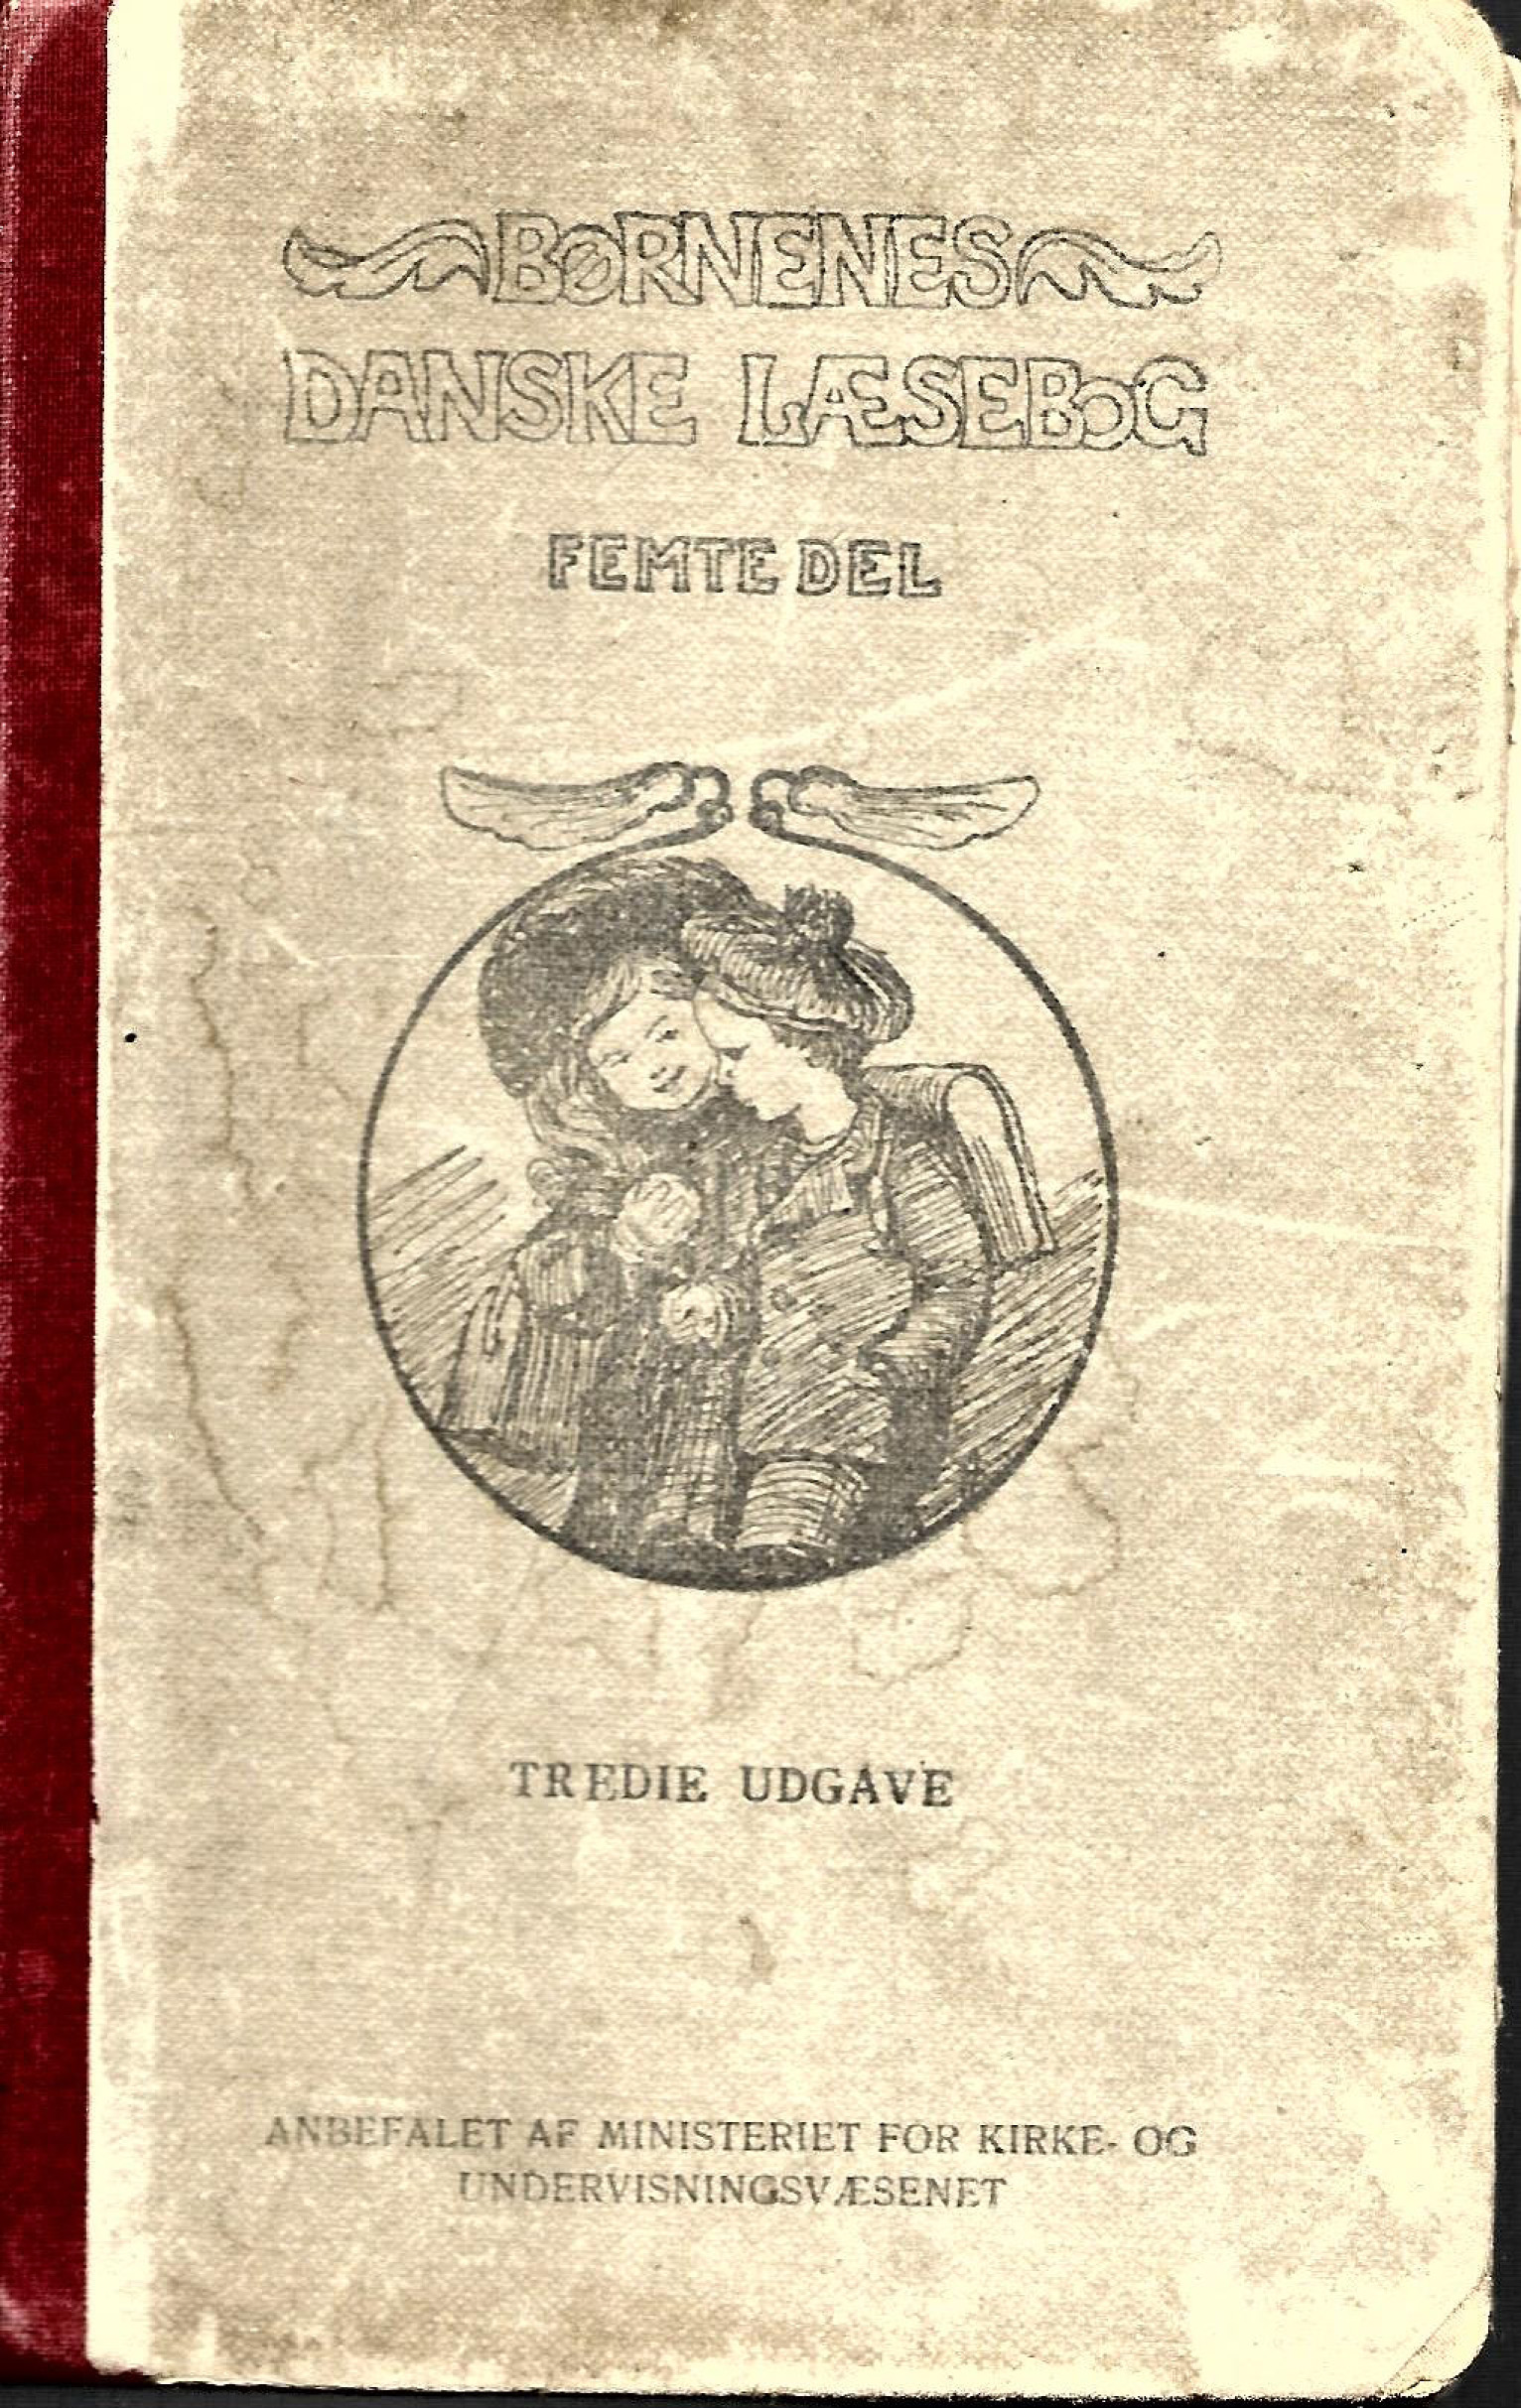 Børnenes danske læsebog femte del 1936-1